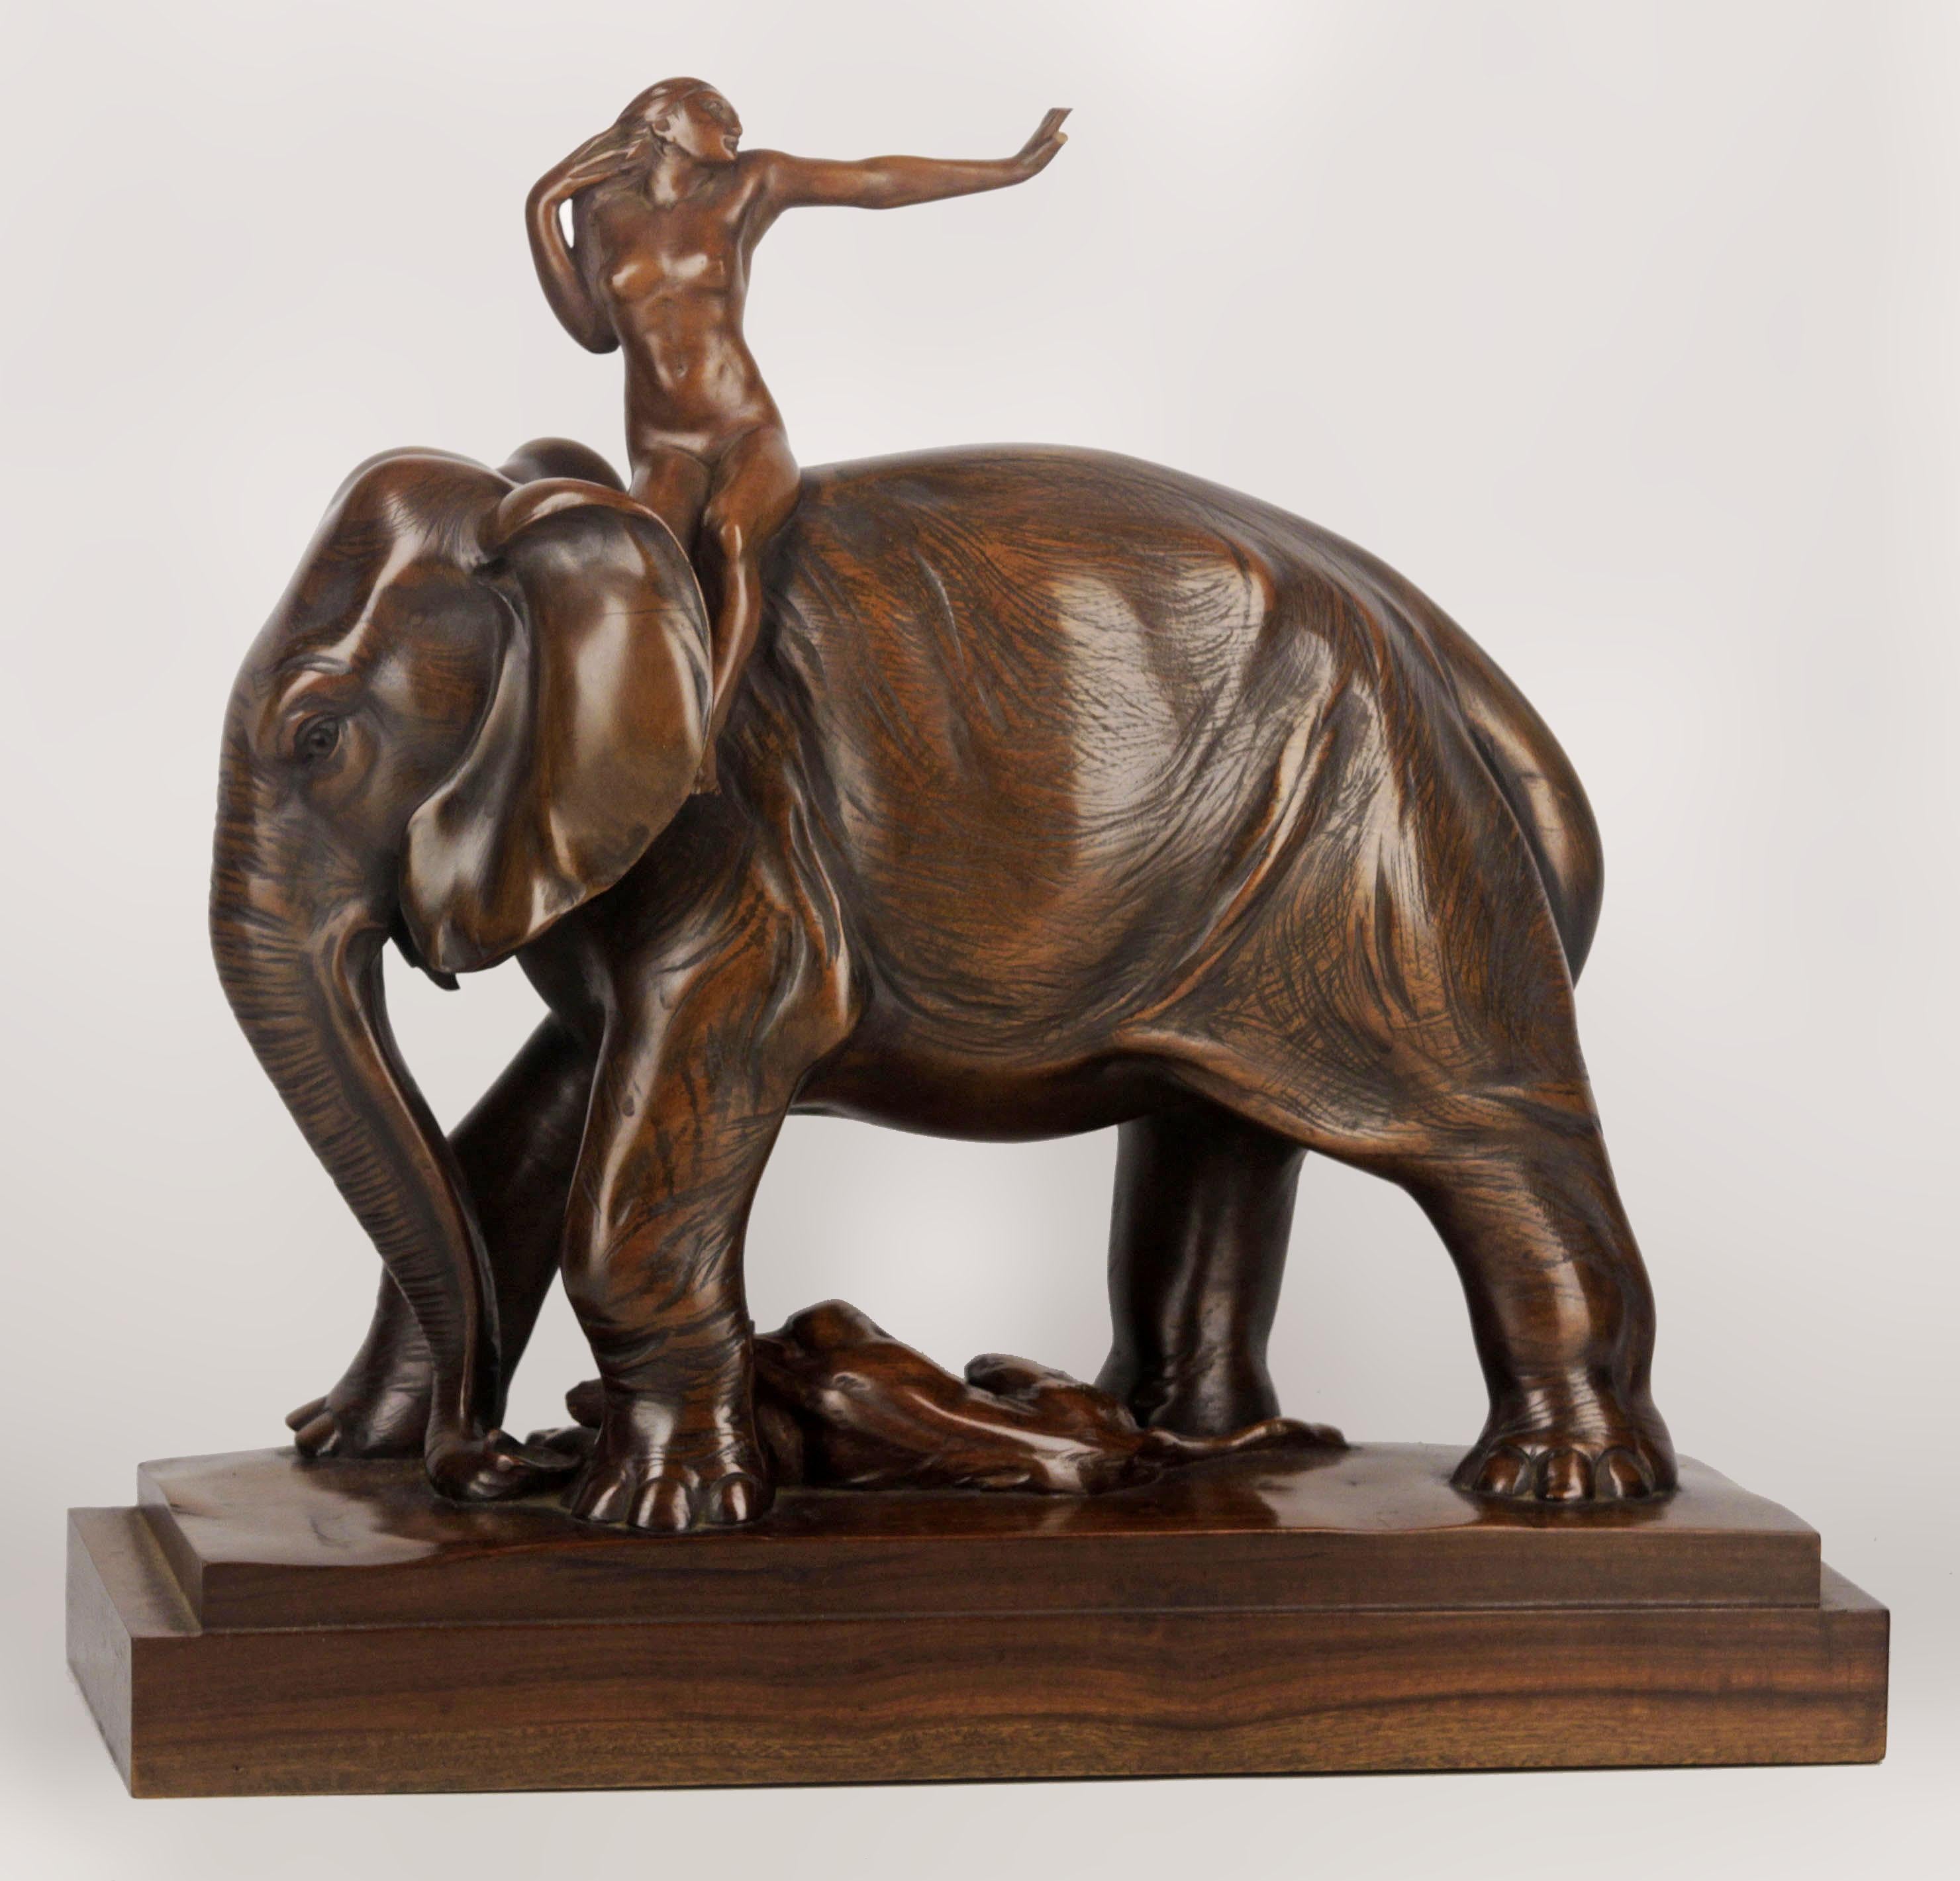 Sculpture en bois verni du début du 20e siècle, signée J. Zanetti, représentant un éléphant africain, un tigre et une cavalière.

Par : J. Zanetti
MATERIAL : bois
Technique : sculpté, sculpté à la main, artisanal, verni, poli
Dimensions : 12,5 in x